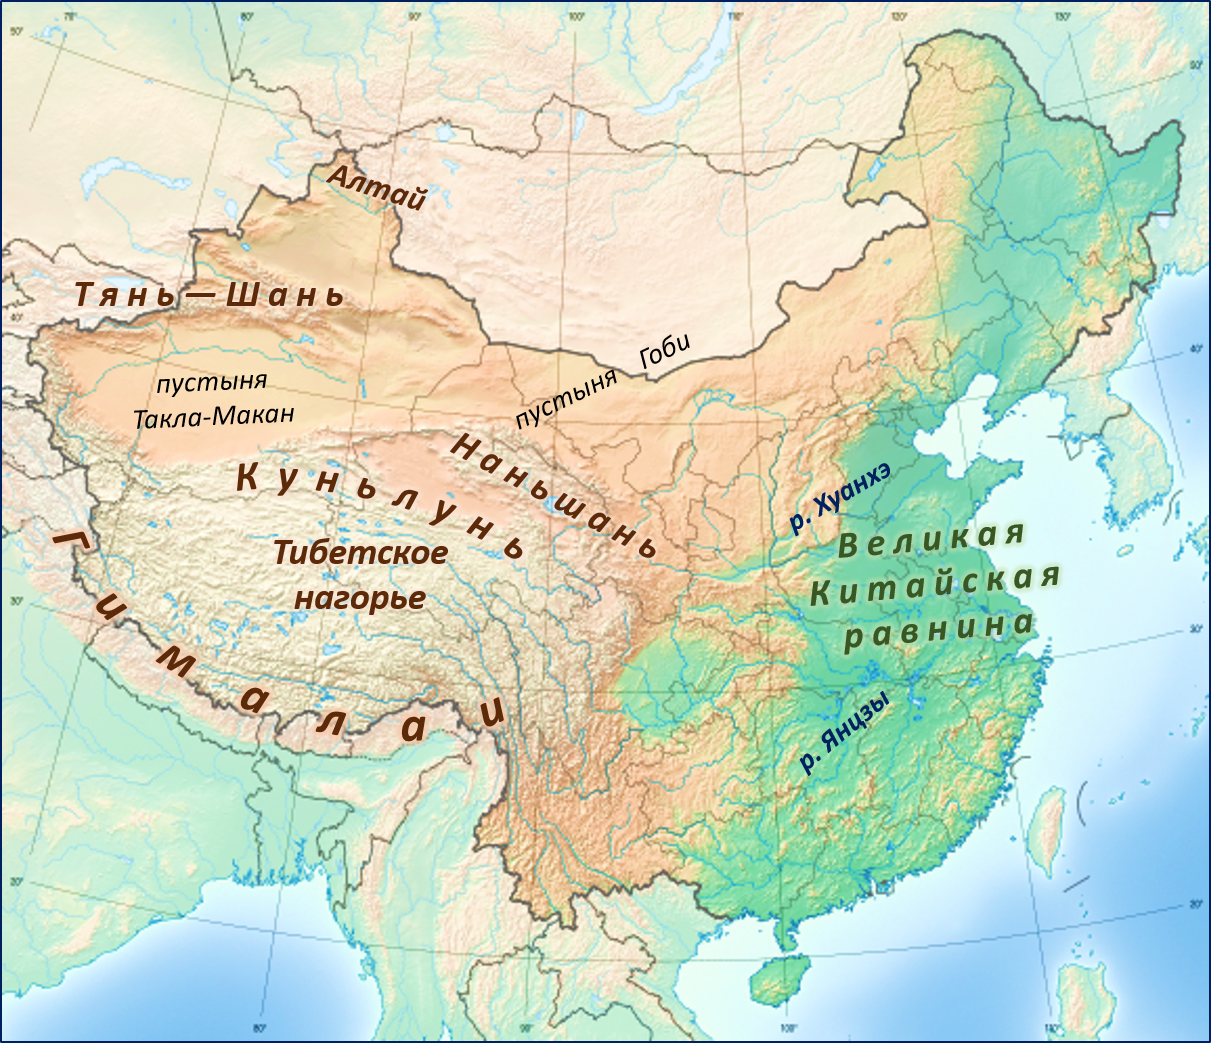 Великая китайская равнина на карте евразии. Рельеф Китая карта. Великая китайская равнина границы на карте. Карта Китая географическая рельеф. Великая китайская равнина на карте Азии.